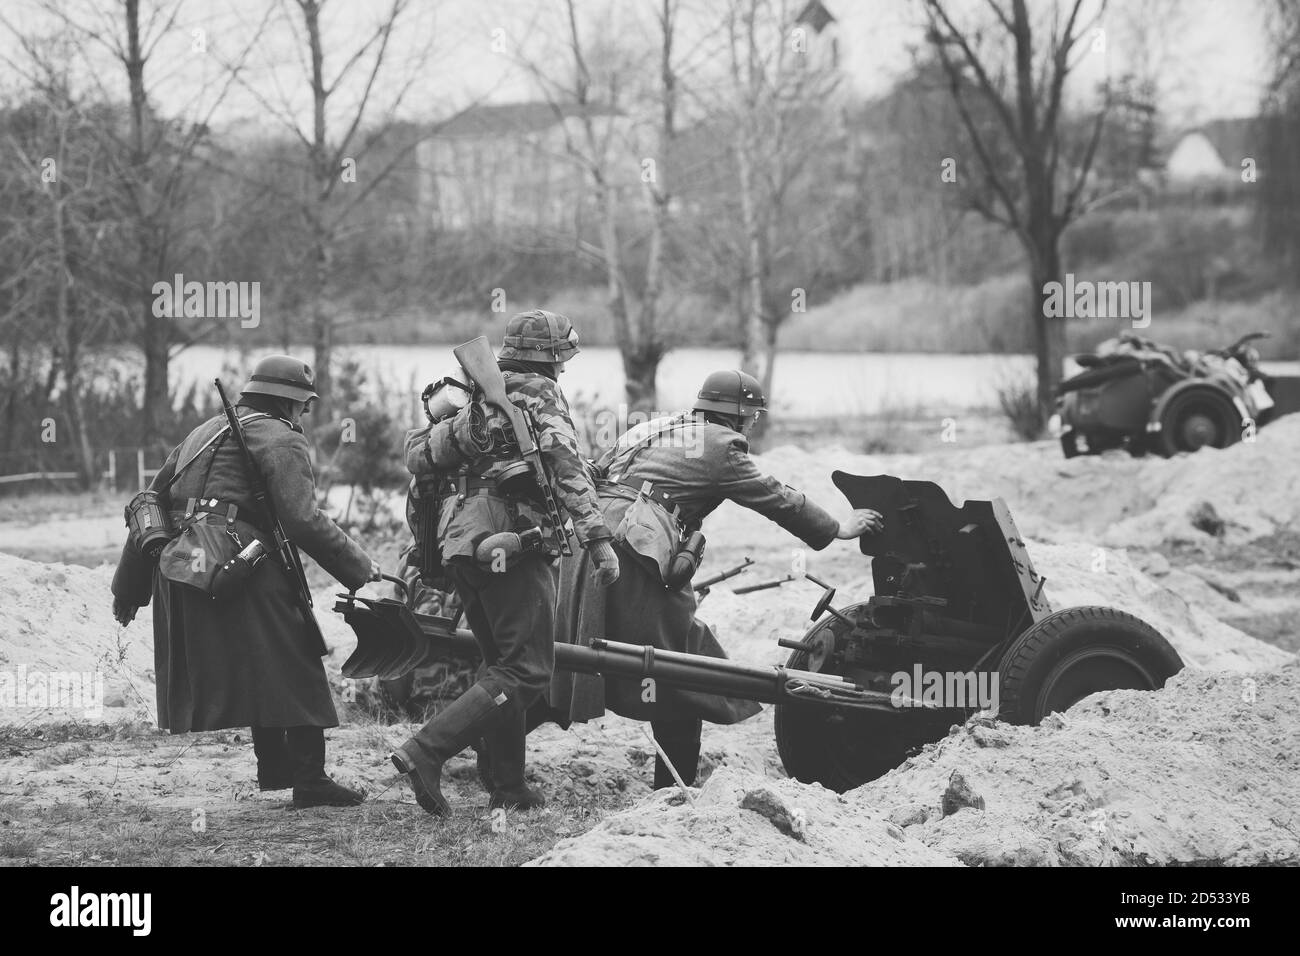 Re-enactors Dressed As German Soldiers In World War II AreRoll Out ...